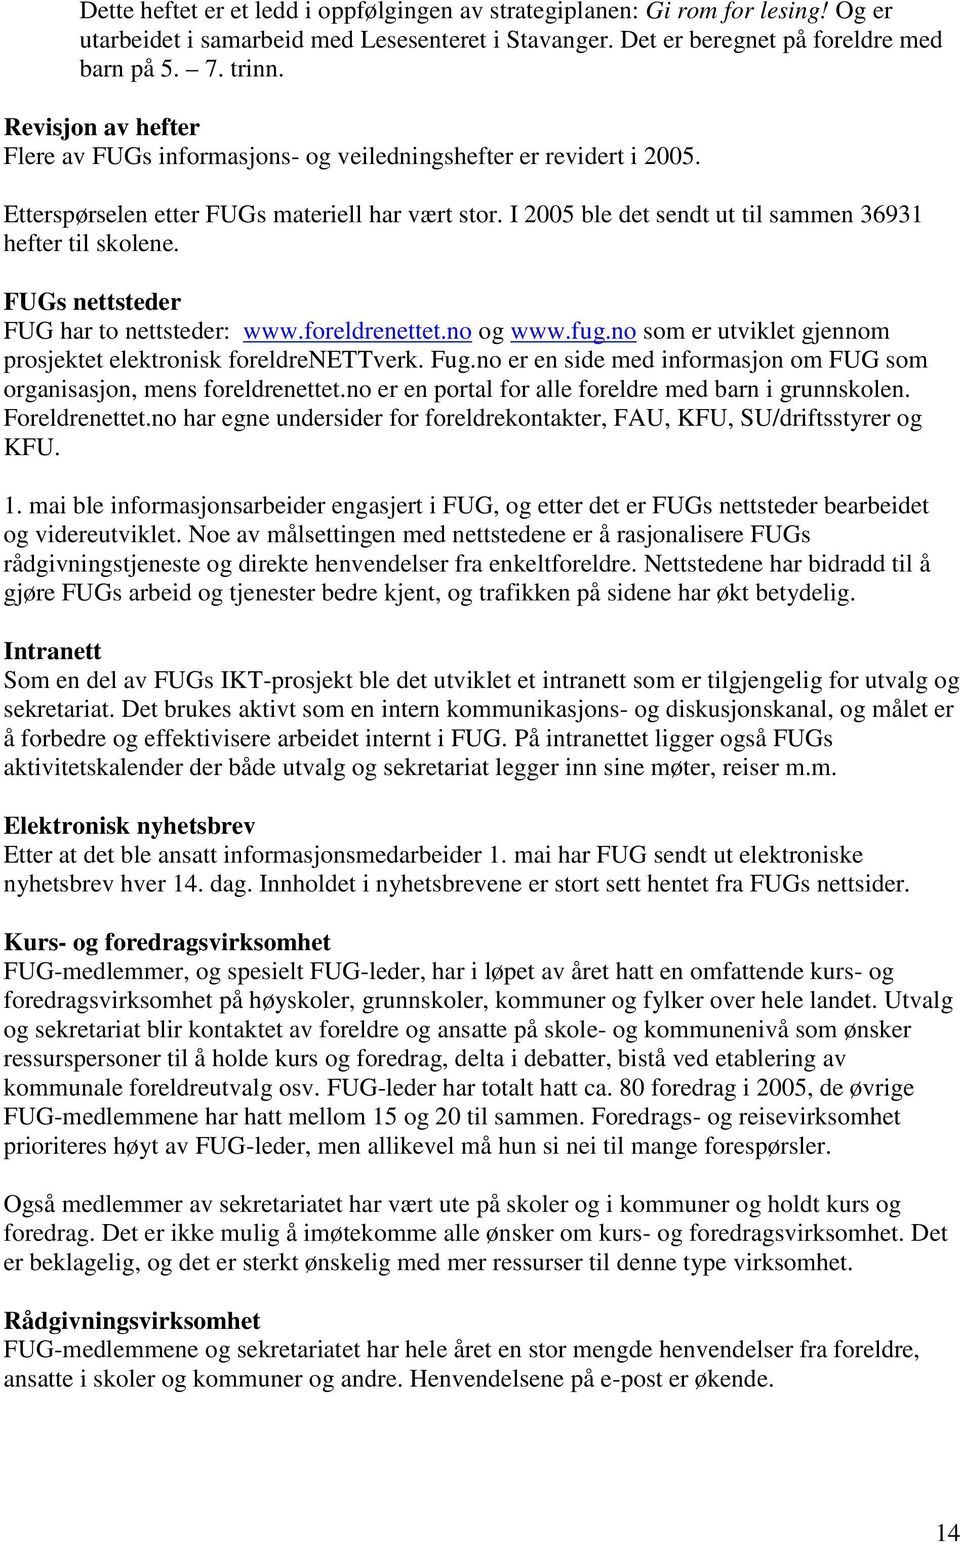 FUGs nettsteder FUG har to nettsteder: www.foreldrenettet.no og www.fug.no som er utviklet gjennom prosjektet elektronisk foreldrenettverk. Fug.